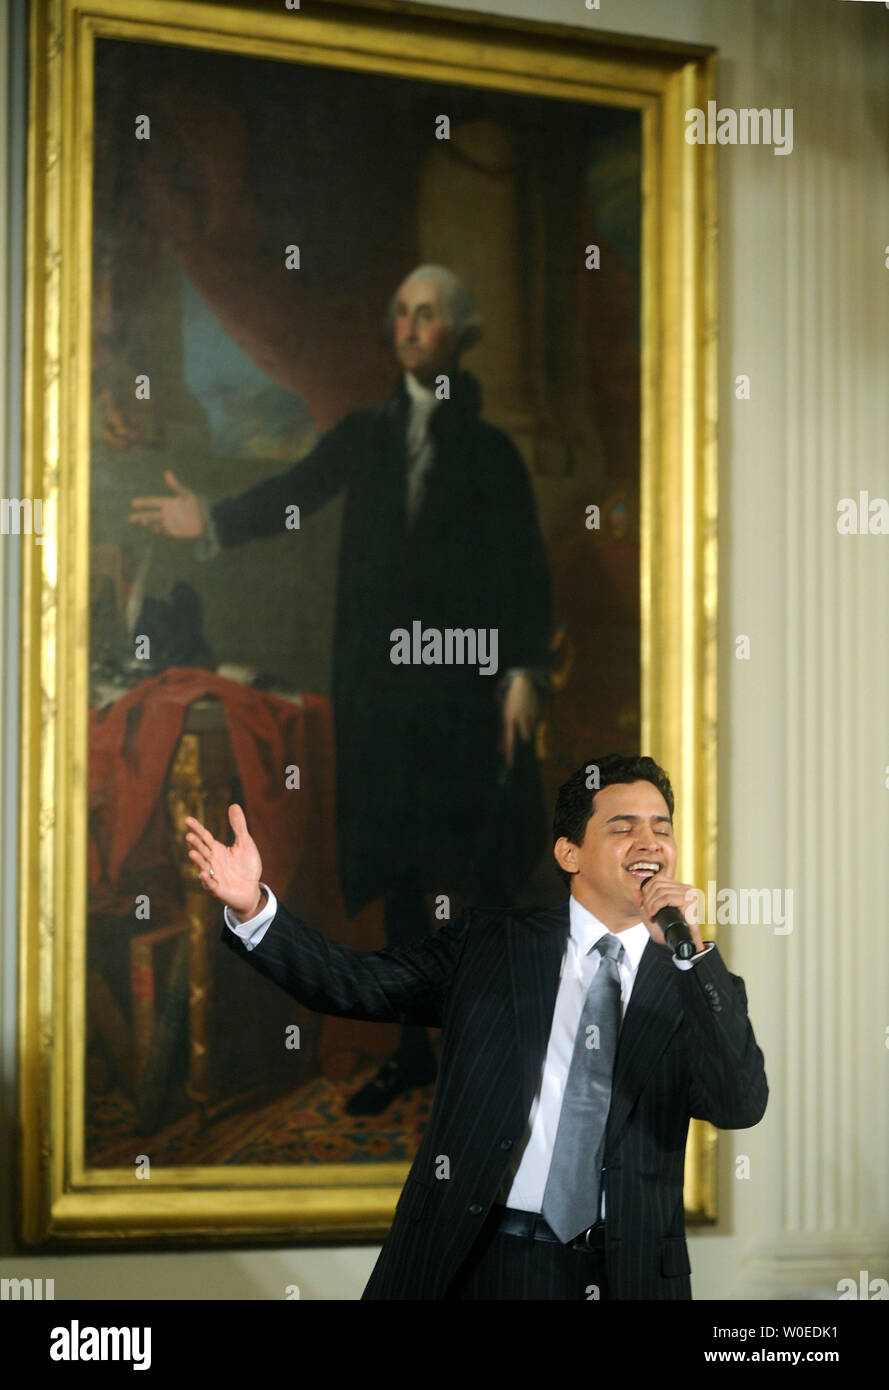 Musicien colombien Jorge Celedon réalise pour le président américain George W. Bush lorsqu'il est sous la direction de Gilbert Stuart's portrait de George Washington au cours d'une célébration du Jour de l'indépendance colombienne dans l'East Room à la Maison Blanche à Washington le 22 juillet 2008. (UPI Photo/Kevin Dietsch) Banque D'Images